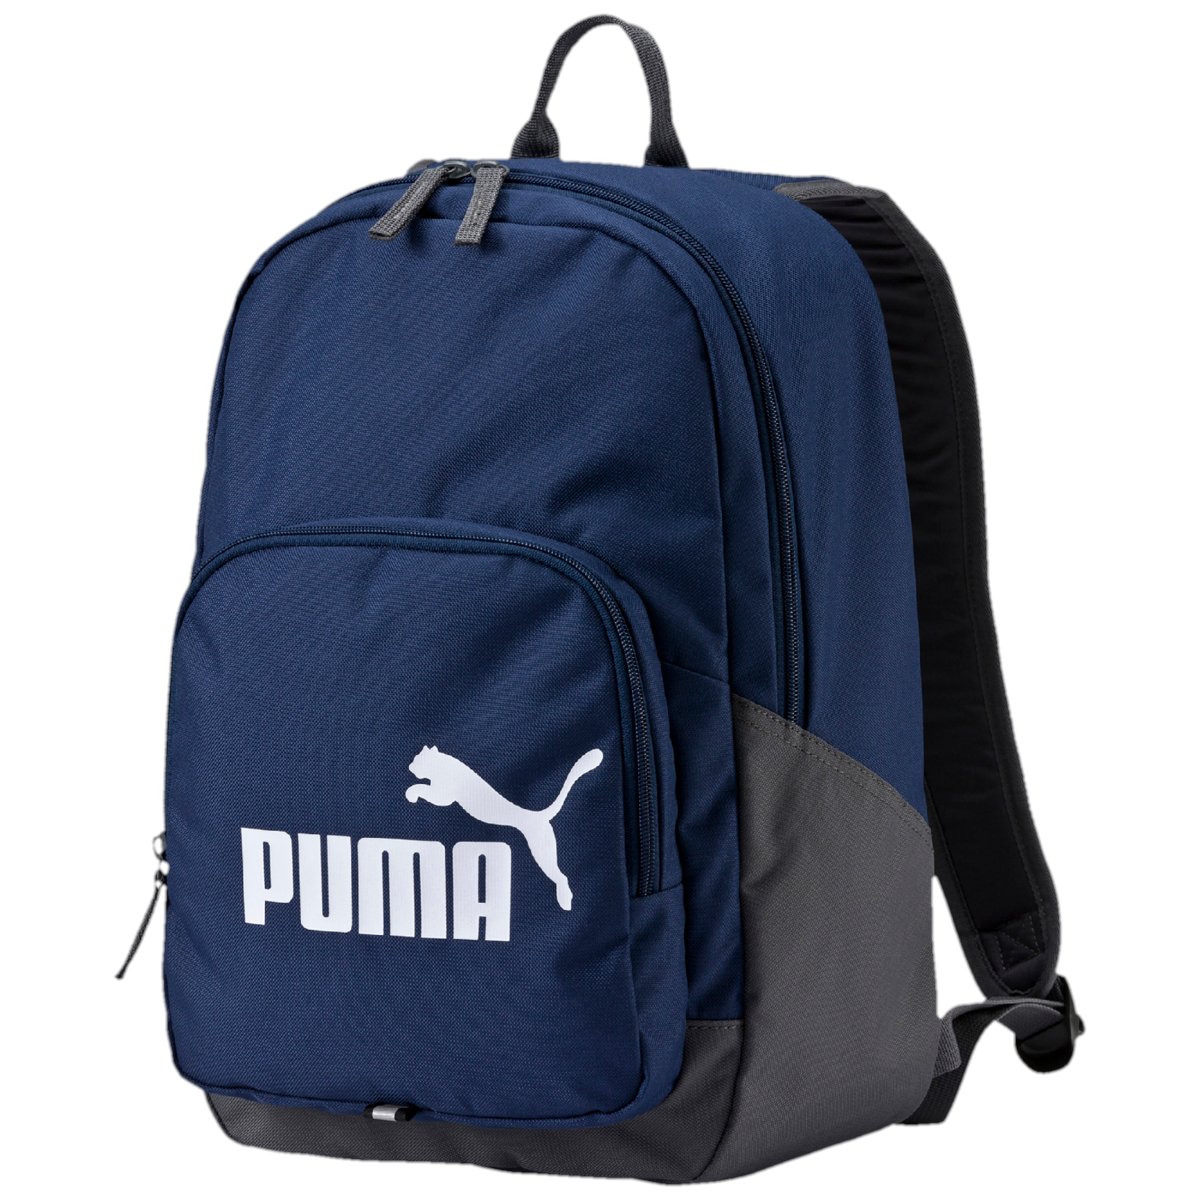 Mochila Puma Phase Backpack - Unisex